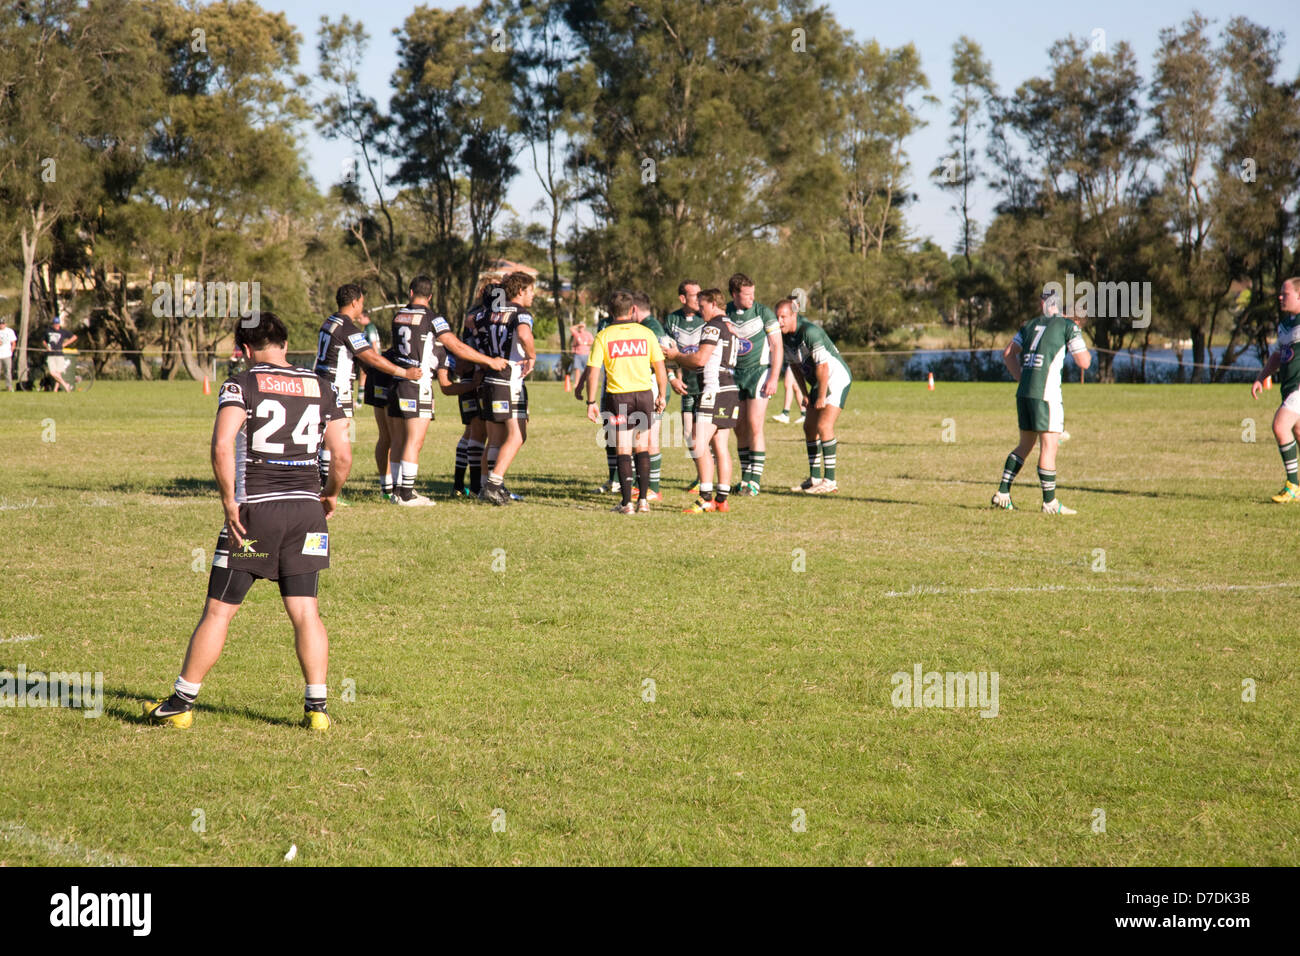 Juego de la liga de rugby australiano, Sydney, Australia Foto de stock